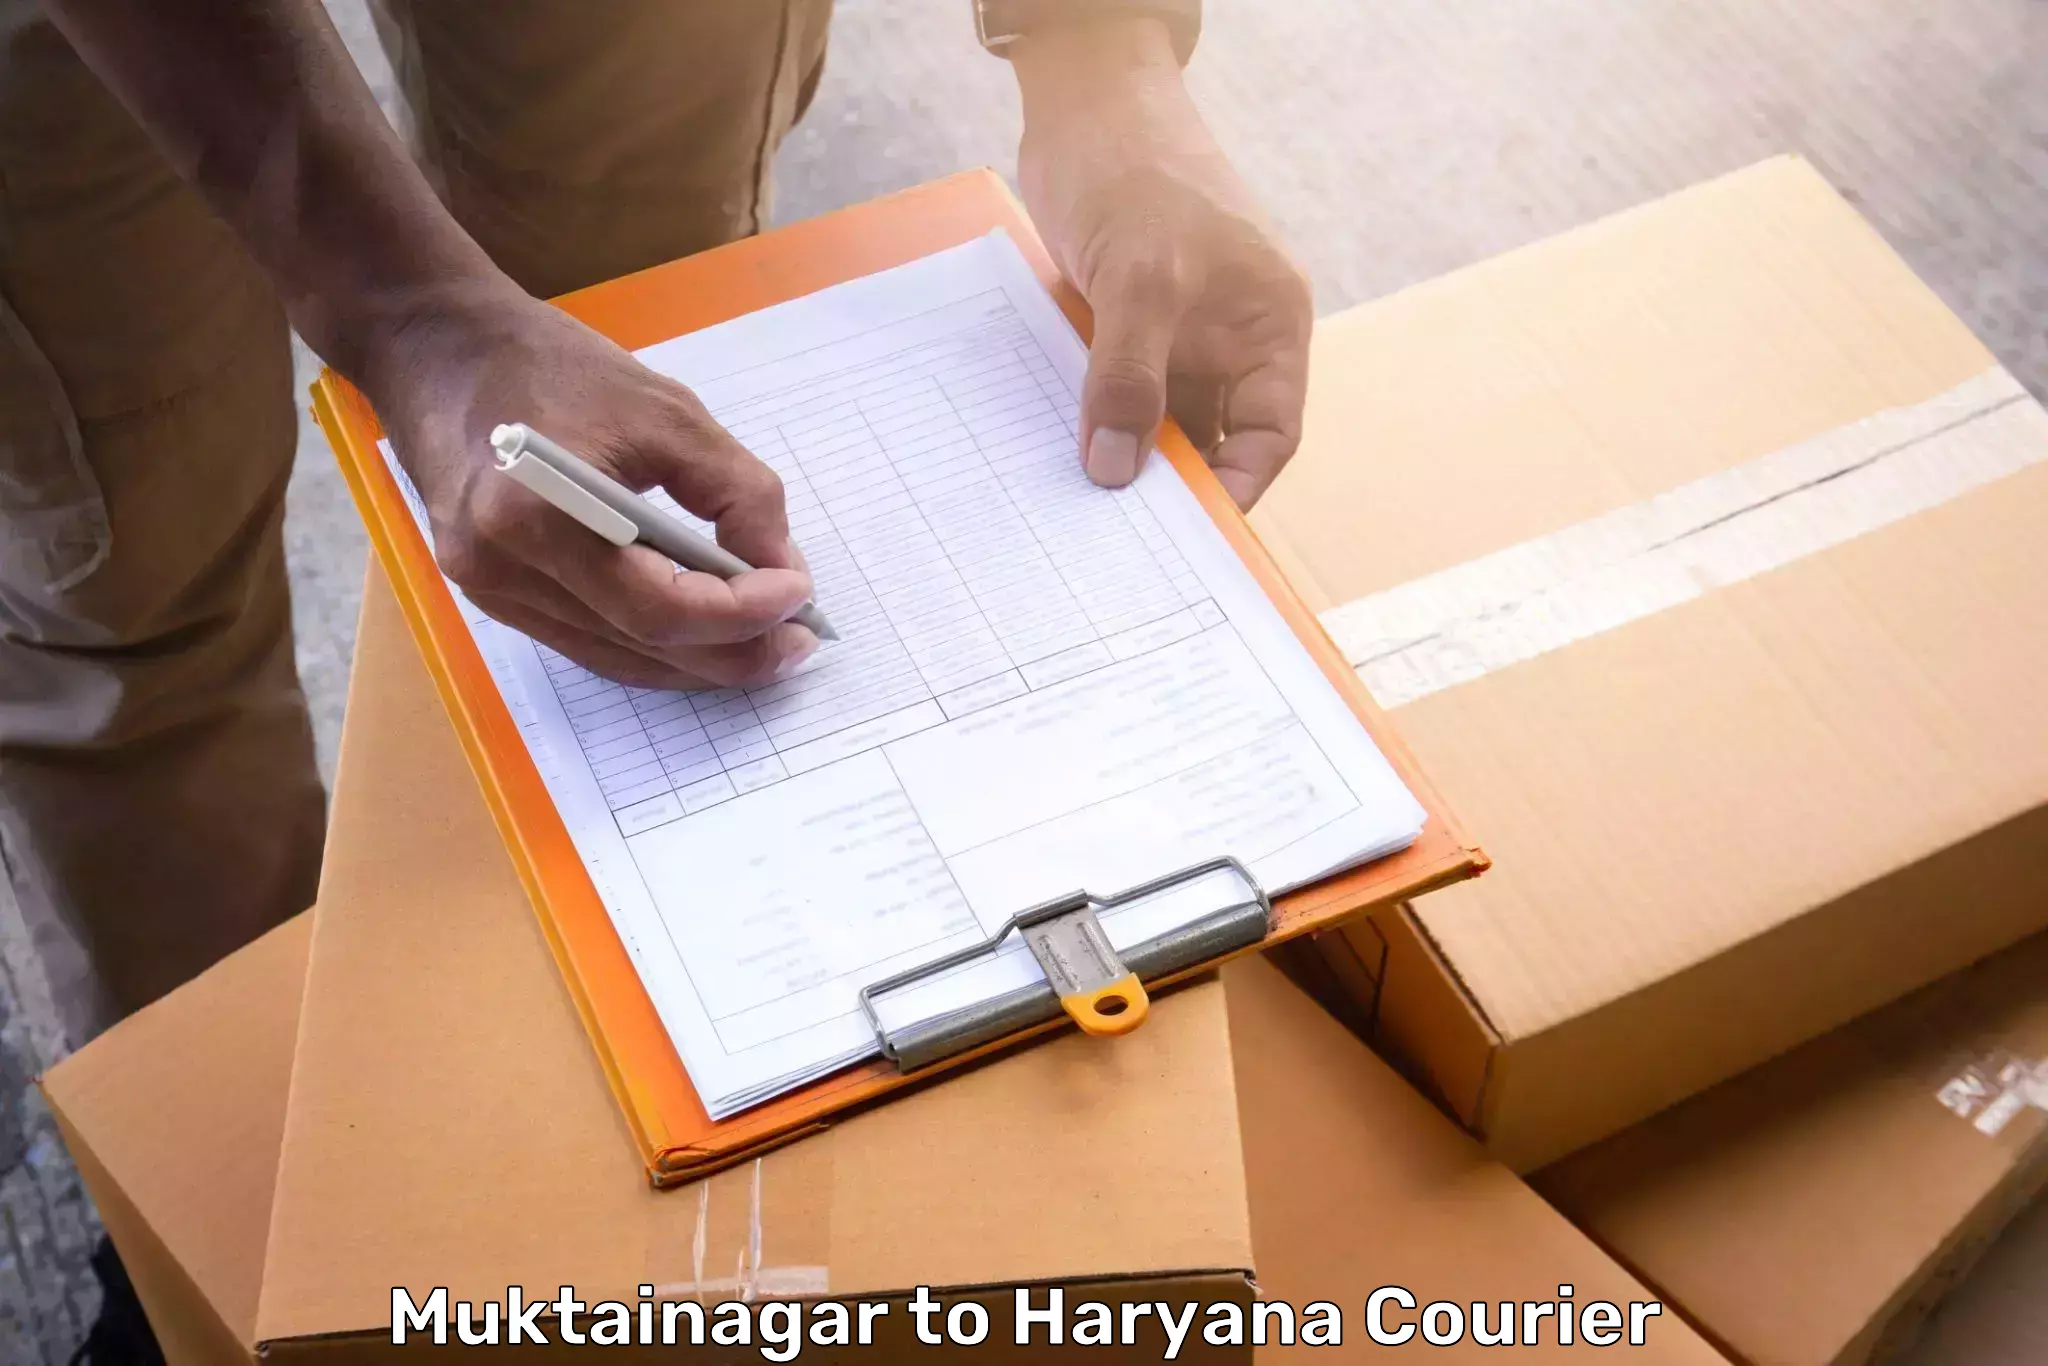 Baggage relocation service Muktainagar to Chaudhary Charan Singh Haryana Agricultural University Hisar